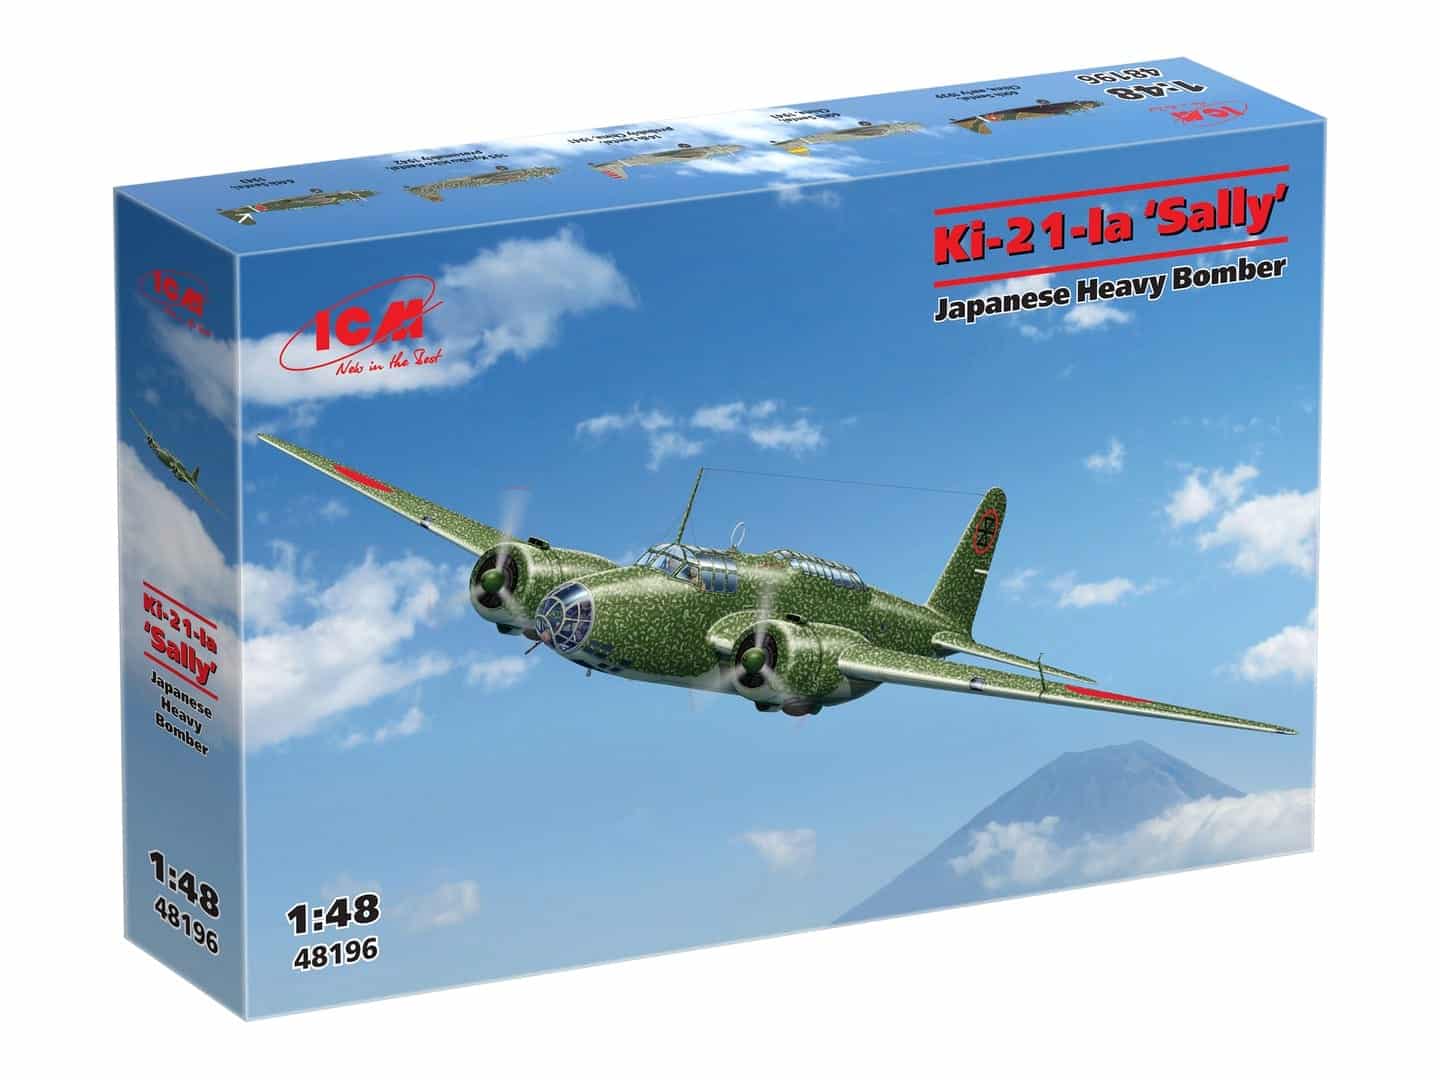 https://model-universe.com/wp-content/uploads/ICM-48196-KI-21IA-Sally-Japanese-Heavy-Bomber-model-kit1.jpg